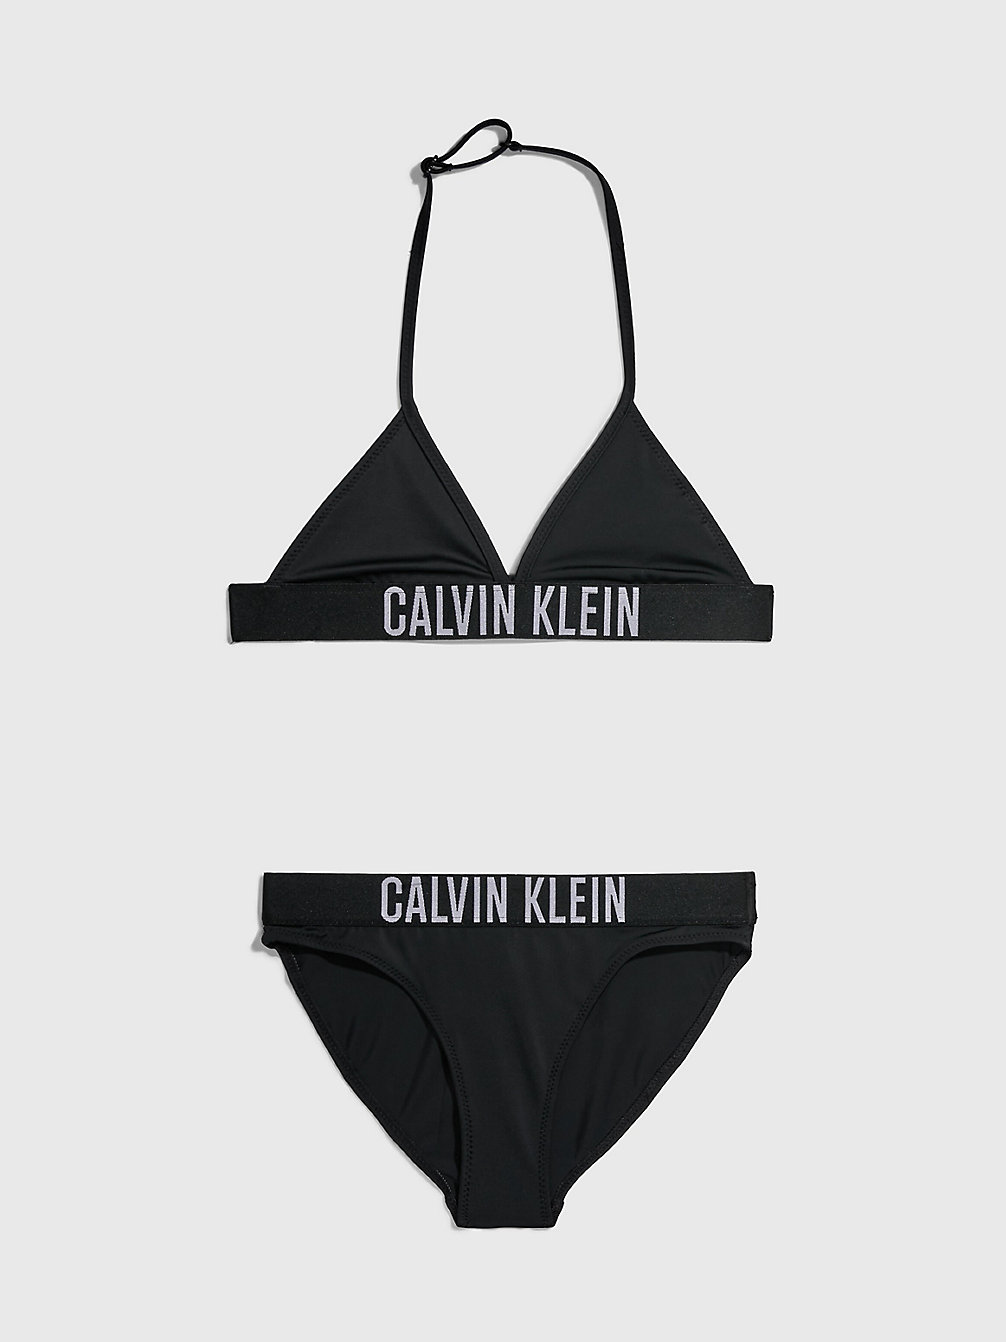 PVH BLACK > Dziewczęcy Dwuczęściowy Strój Kąpielowy Z Trójkątnym Bikini - Intense Power > undefined girls - Calvin Klein